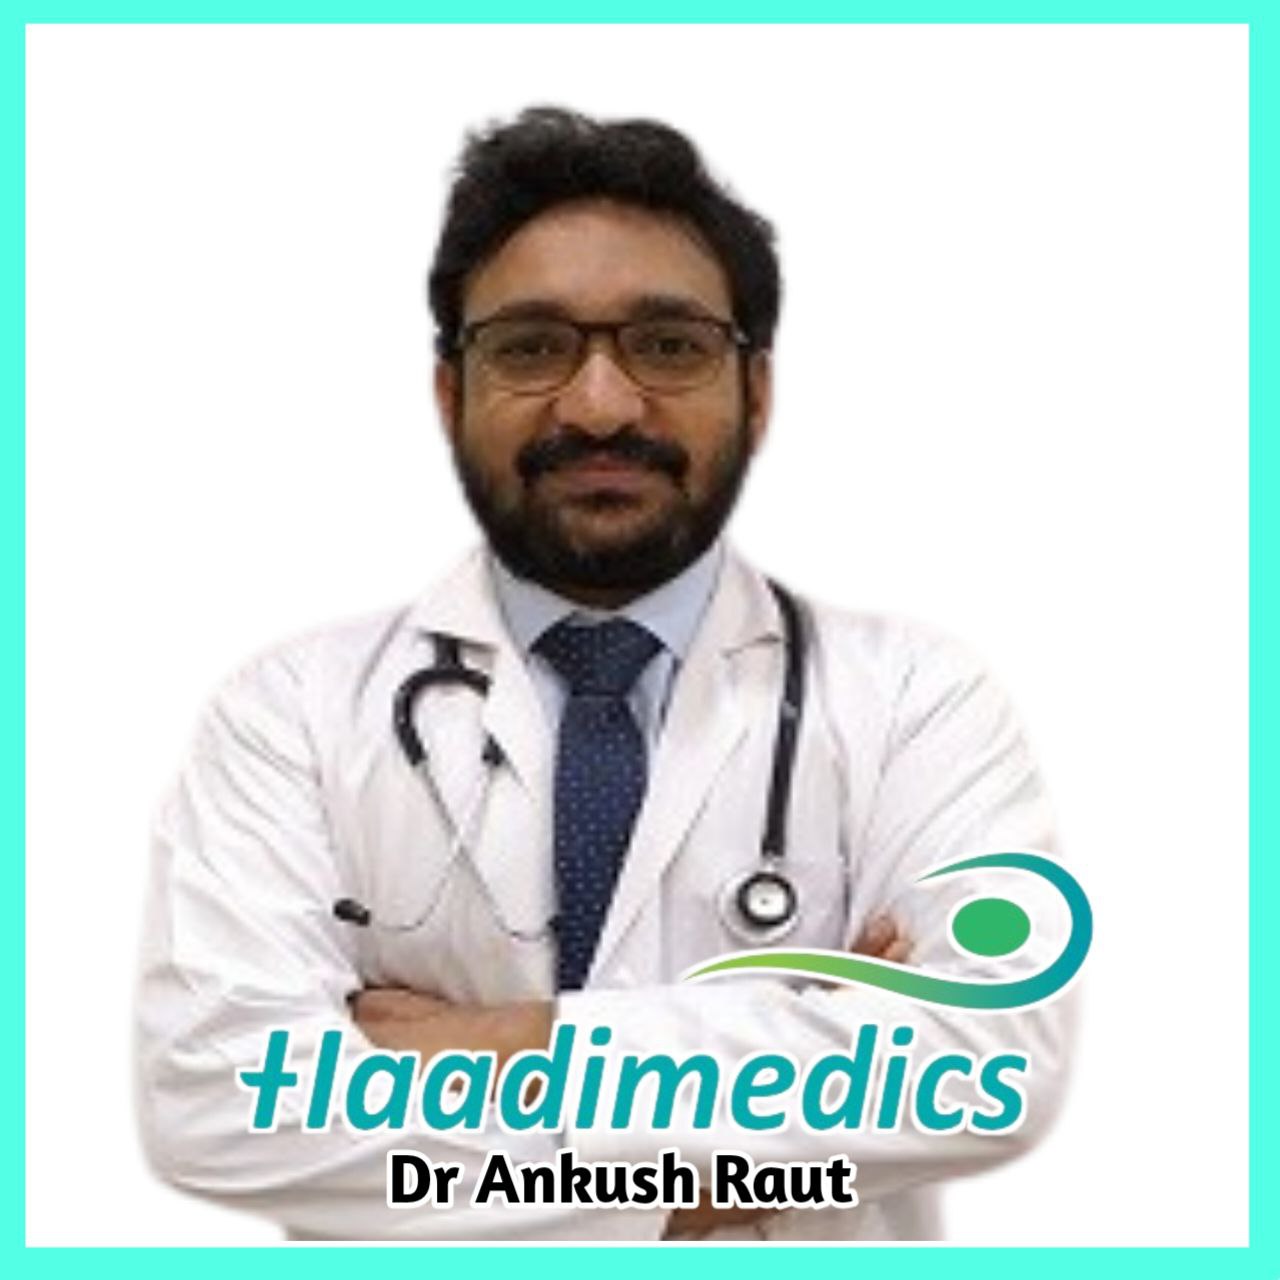 Dr Ankush Raut